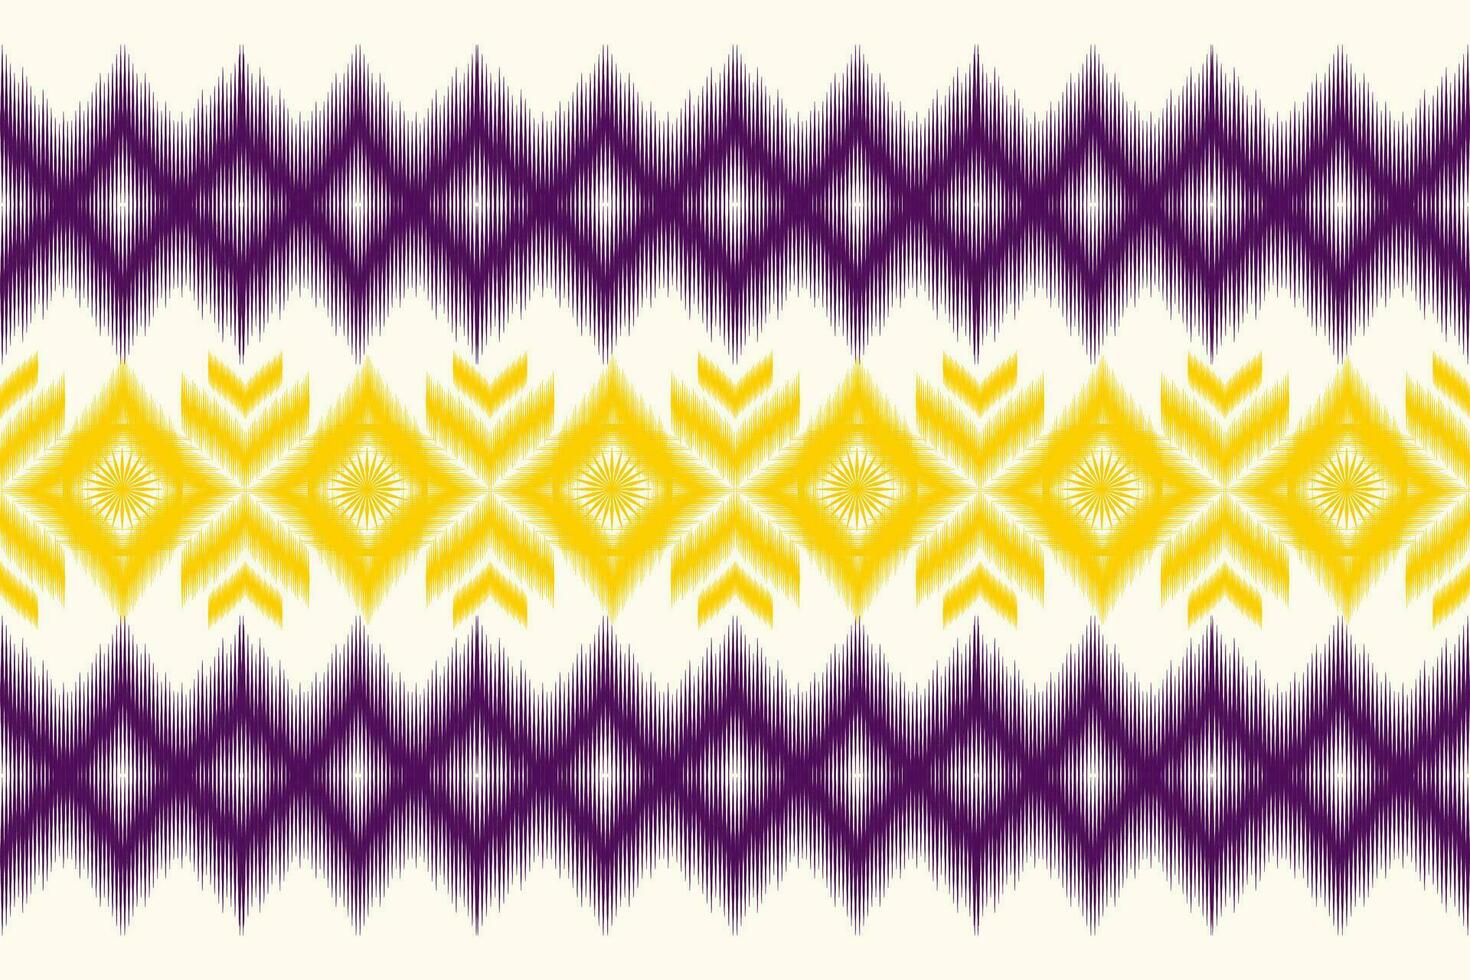 Ikat Vektor ethnisch nahtlos Muster Design. Ikat aztekisch Stoff Teppich Ornamente Textil- Dekorationen Hintergrund.